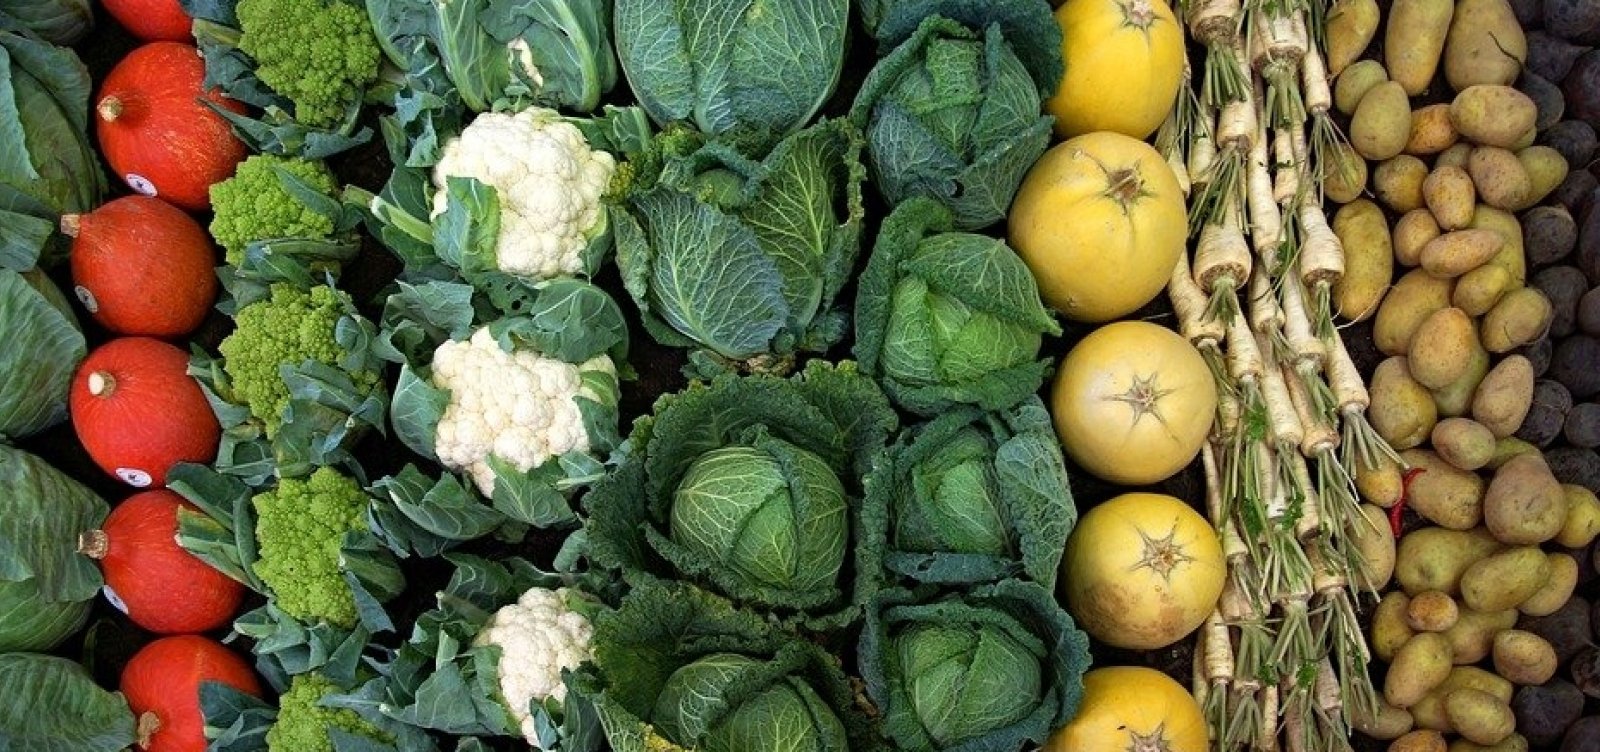 Preço de legumes em Salvador está em queda